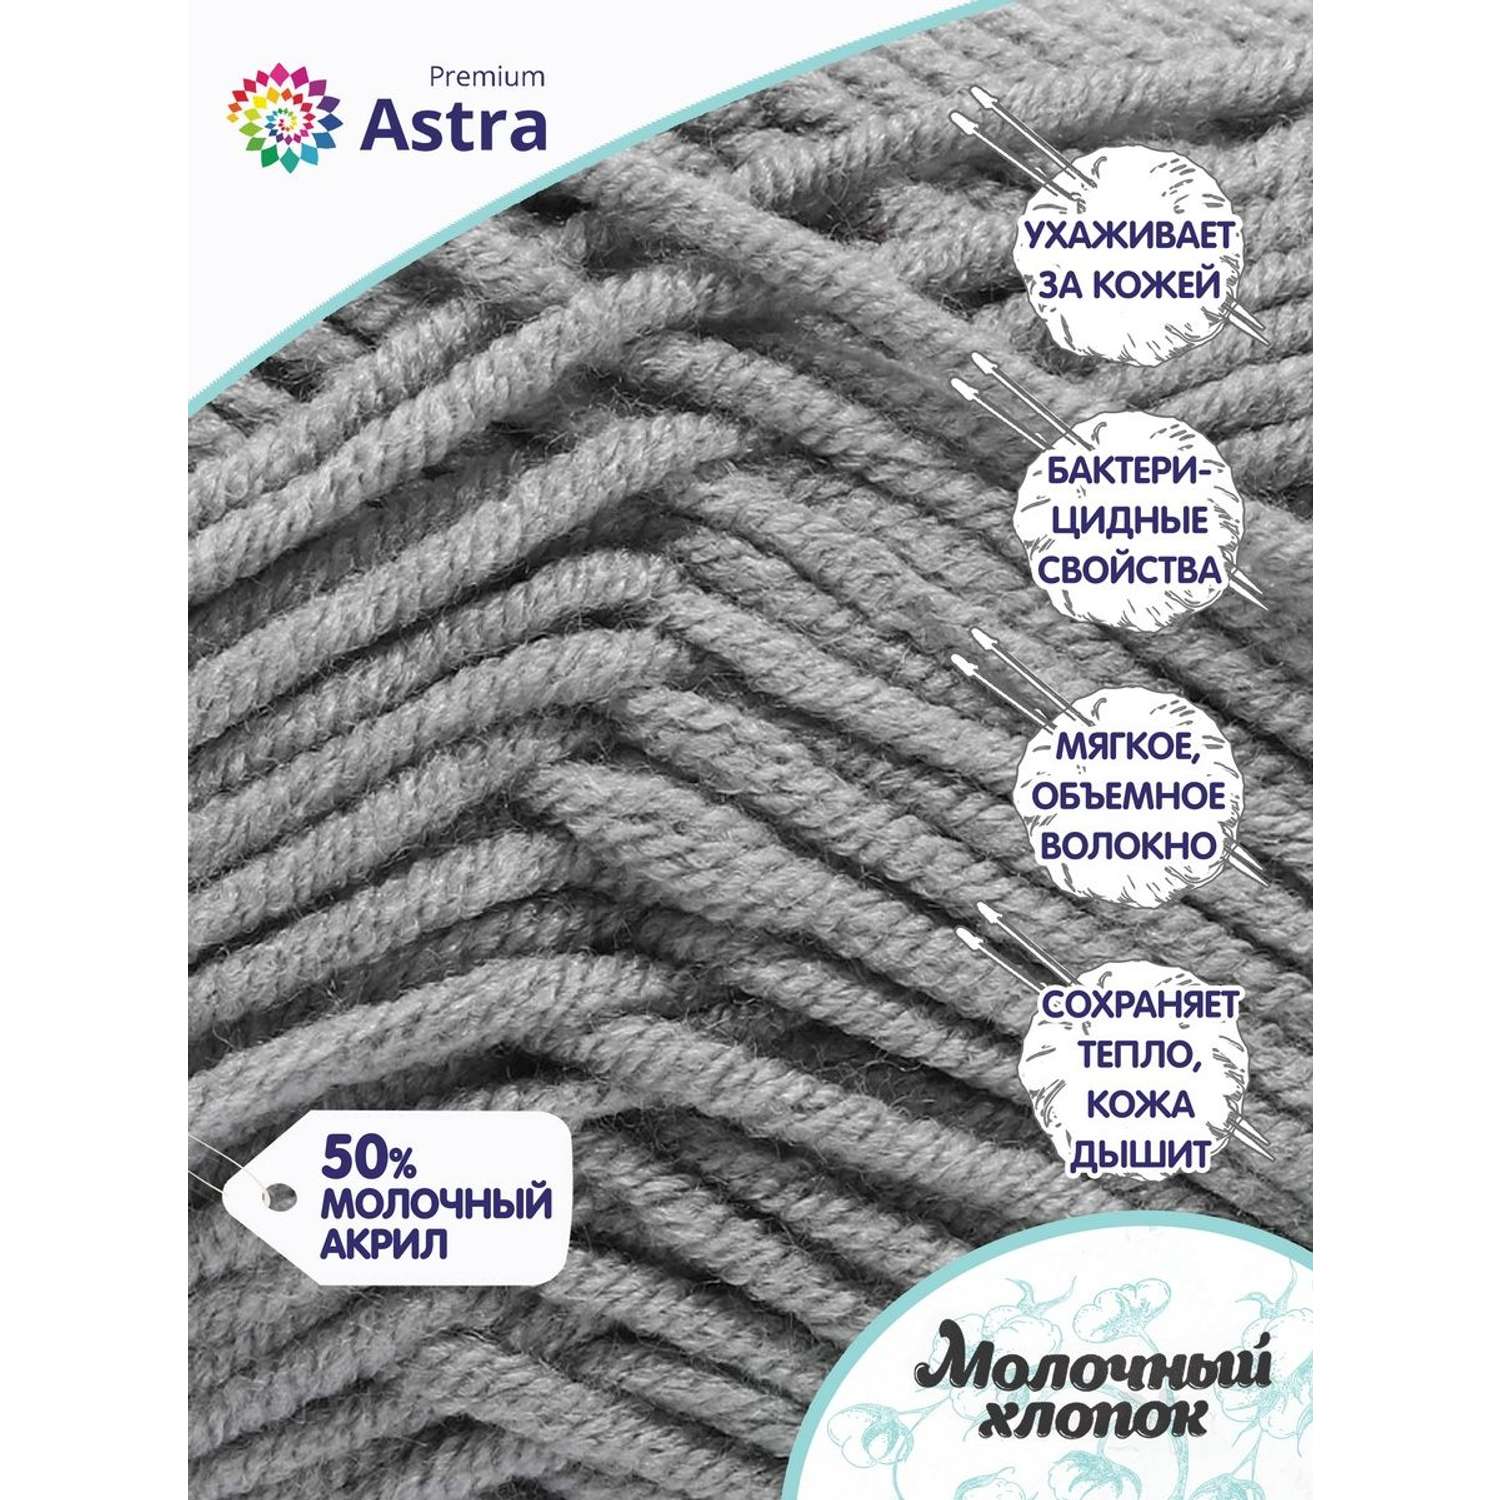 Пряжа для вязания Astra Premium milk cotton хлопок акрил 50 гр 100 м 15 серый 3 мотка - фото 2